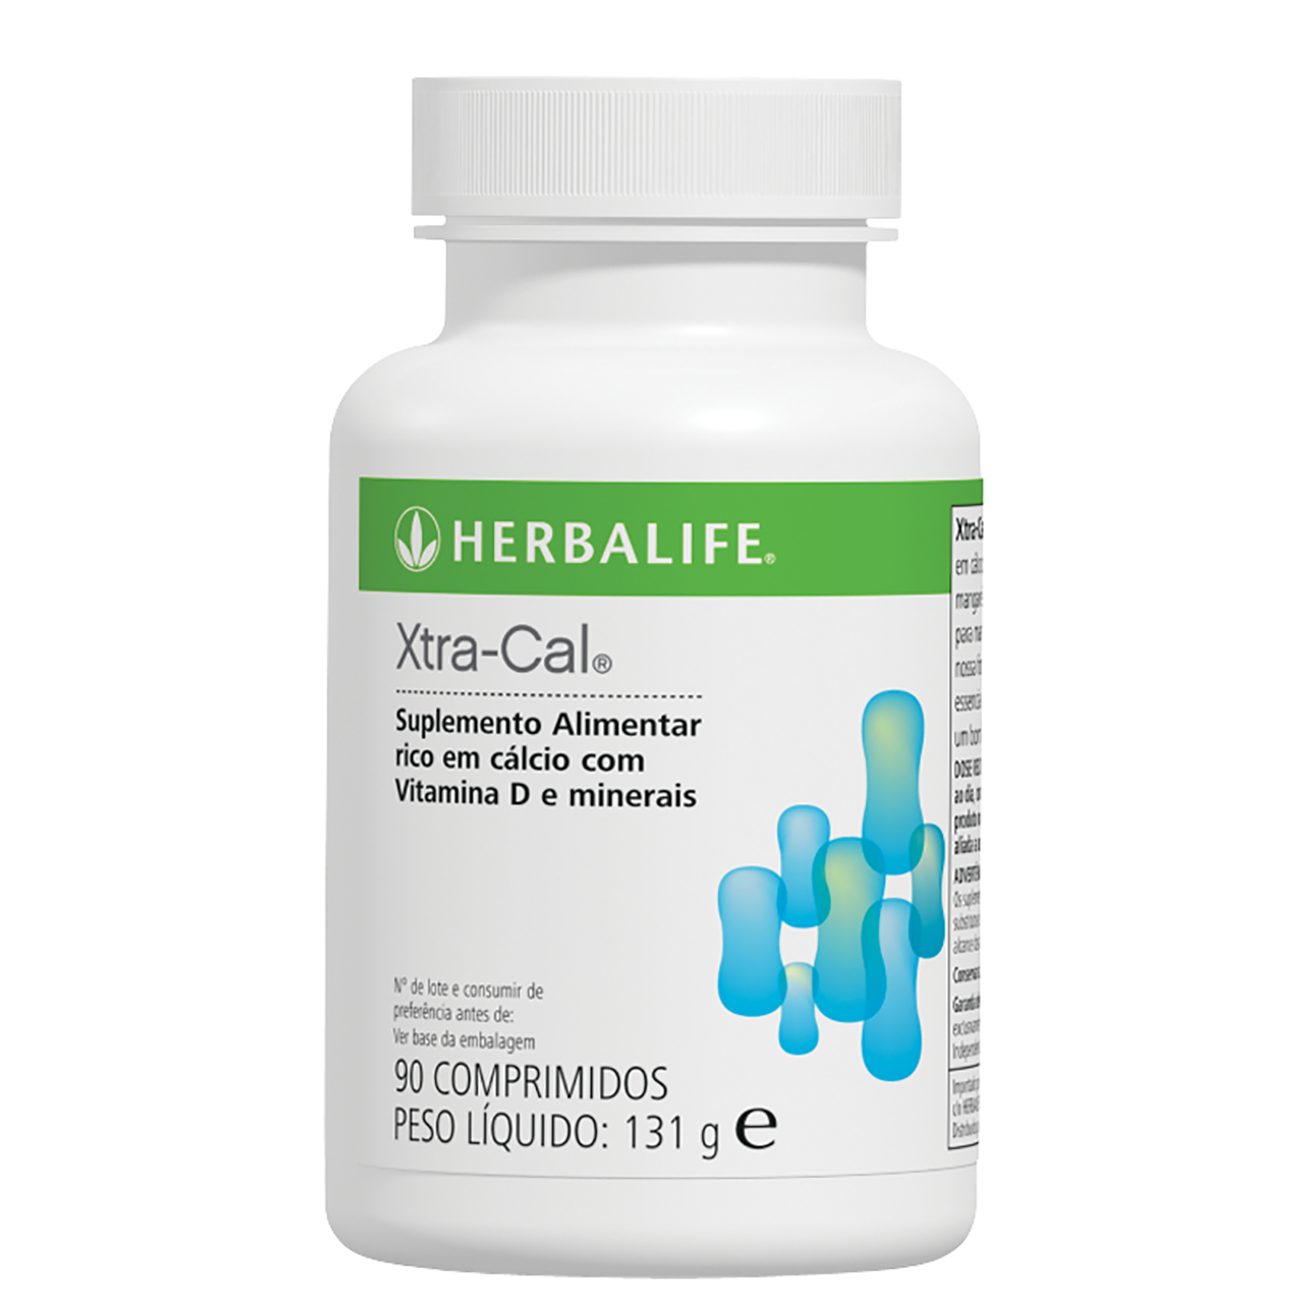 Xtra-Cal Suplemento de cálcio e vitamina D product shot